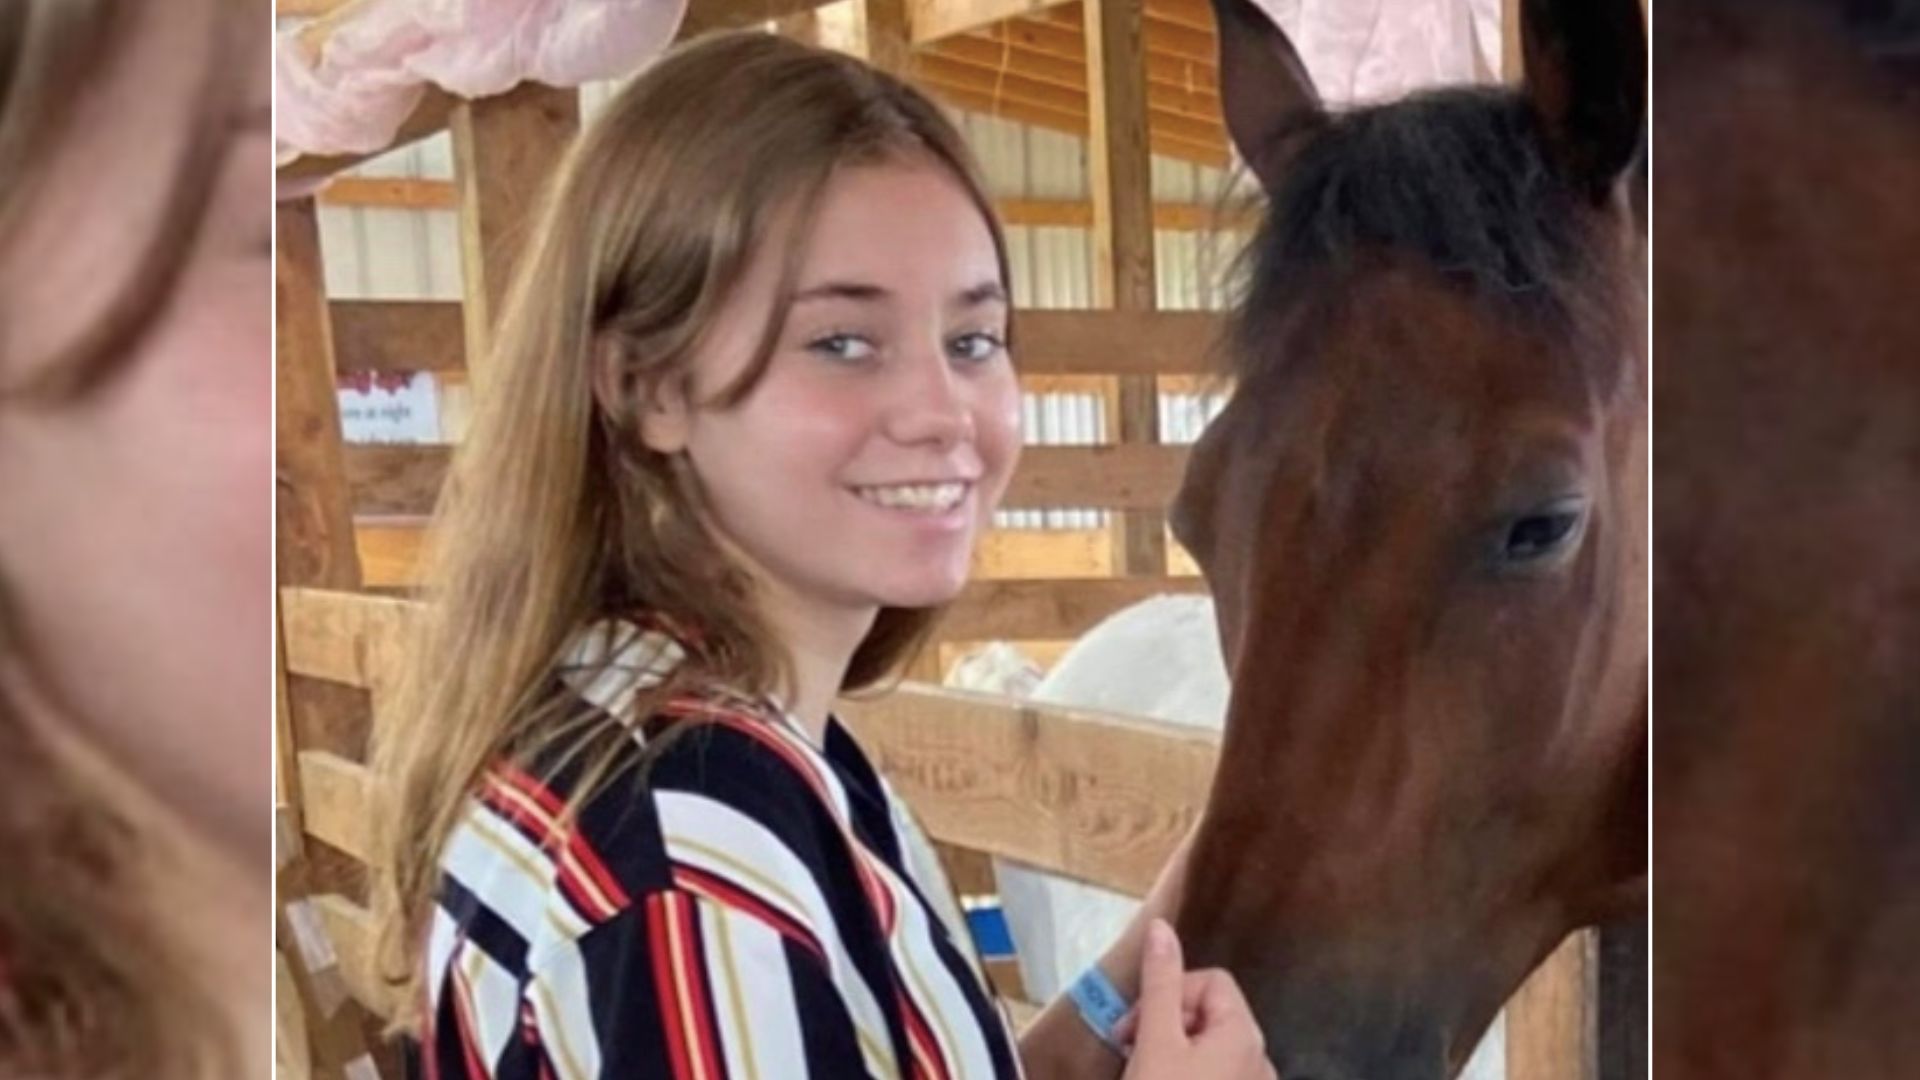 Adriana Kuch popełniła samobójstwo, kilka dni wcześniej została pobita w szkole